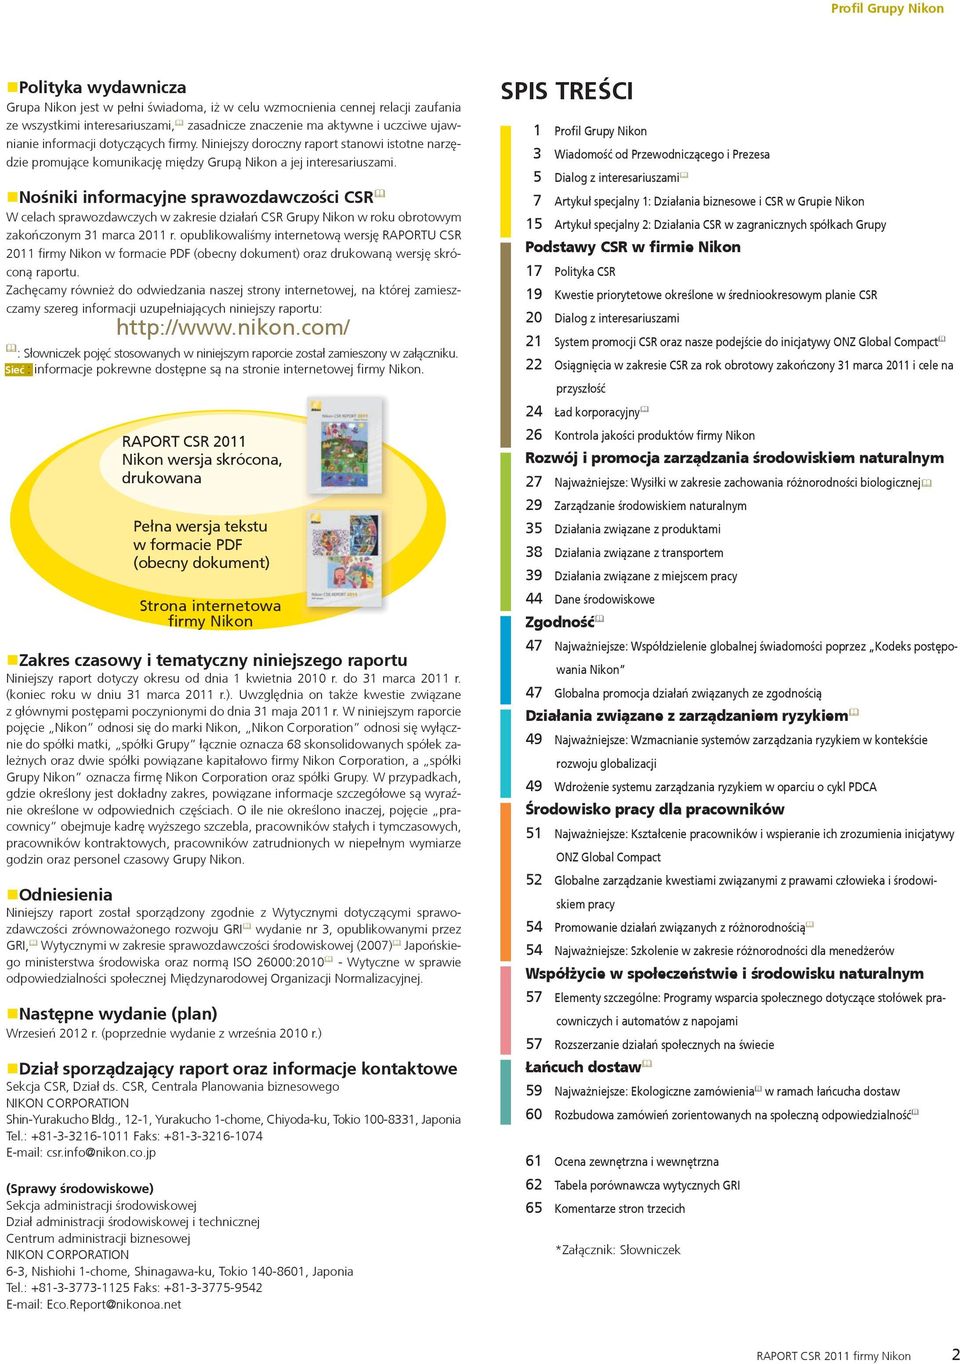 Nośniki informacyjne sprawozdawczości CSR & W celach sprawozdawczych w zakresie działań CSR Grupy Nikon w roku obrotowym zakończonym 31 marca 2011 r.